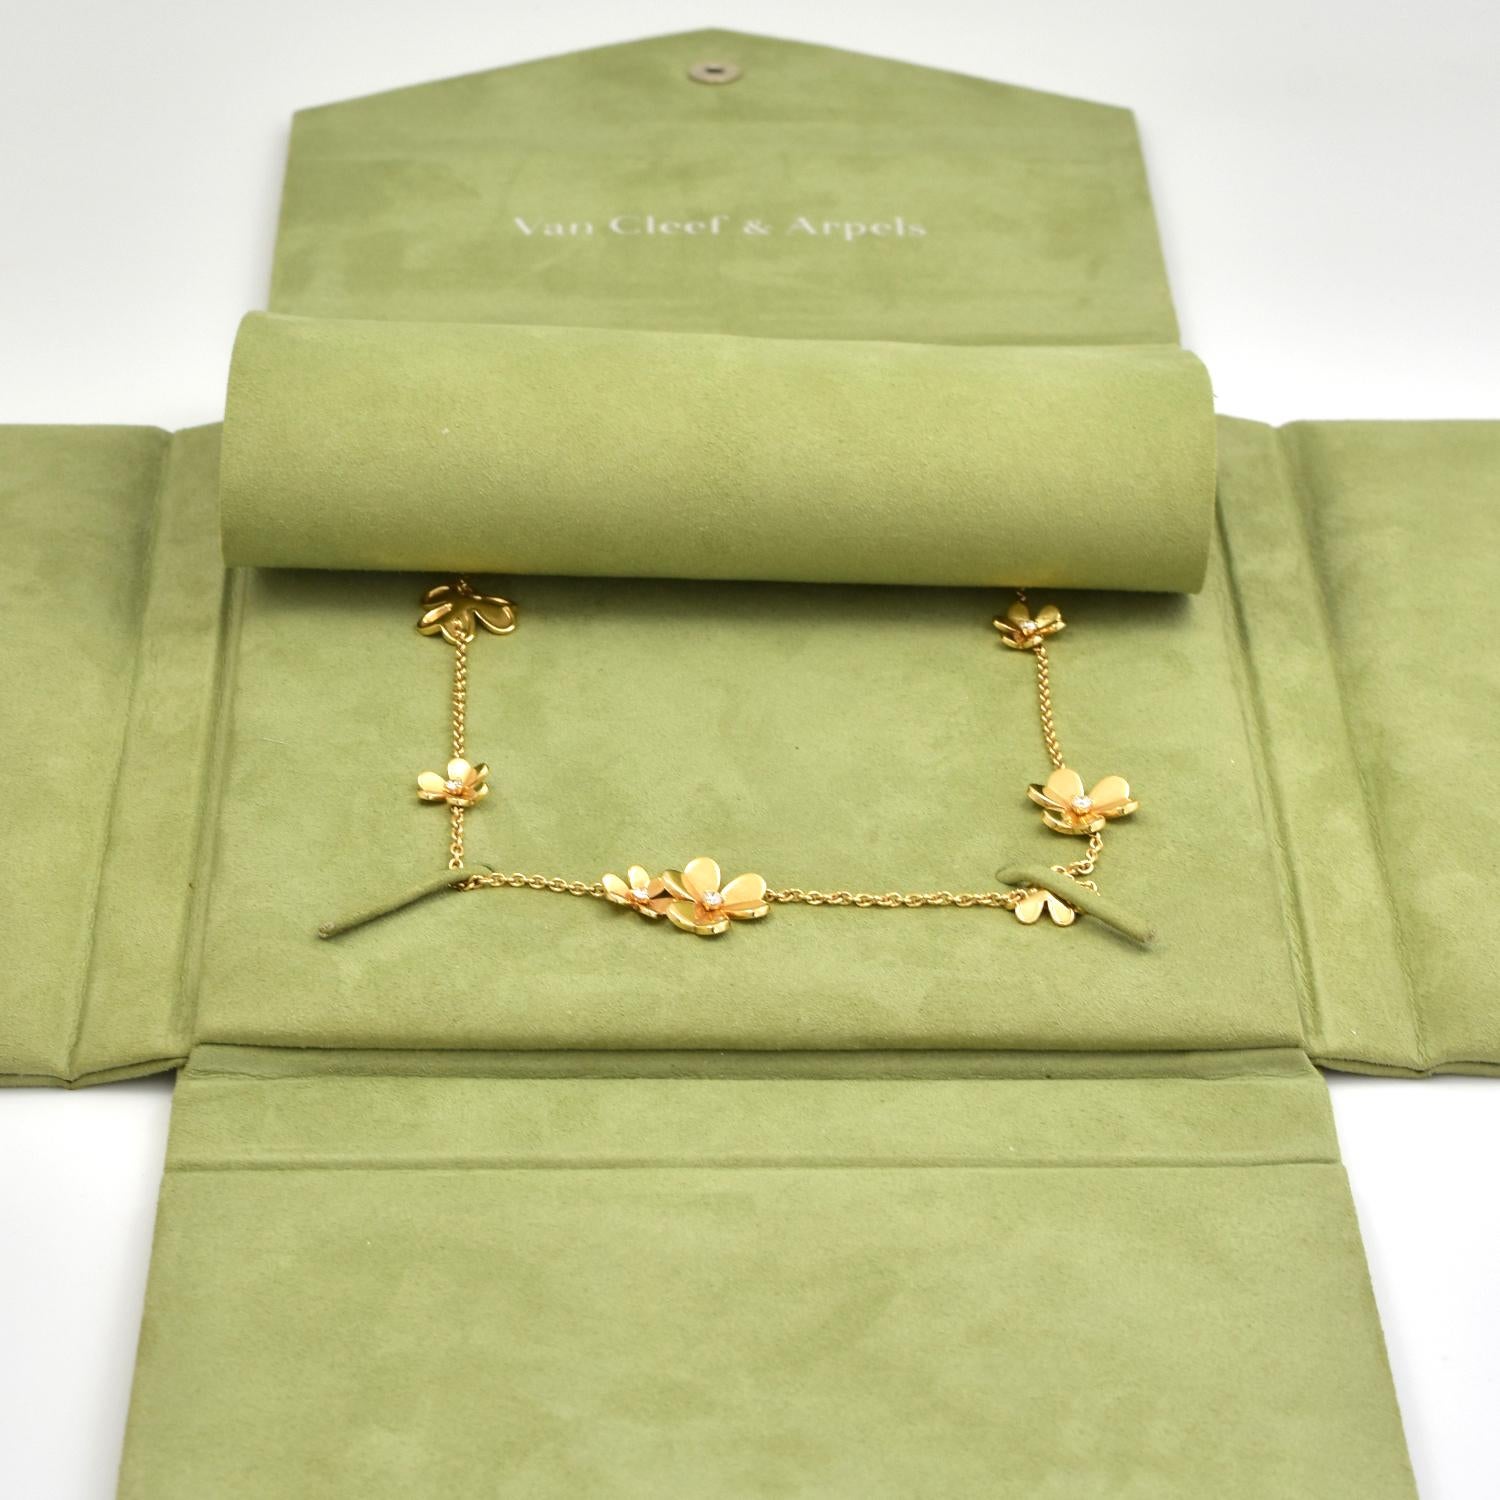 Round Cut Van Cleef & Arpels 9 Motif Frivole Diamond Necklace in 18 Karat Yellow Gold